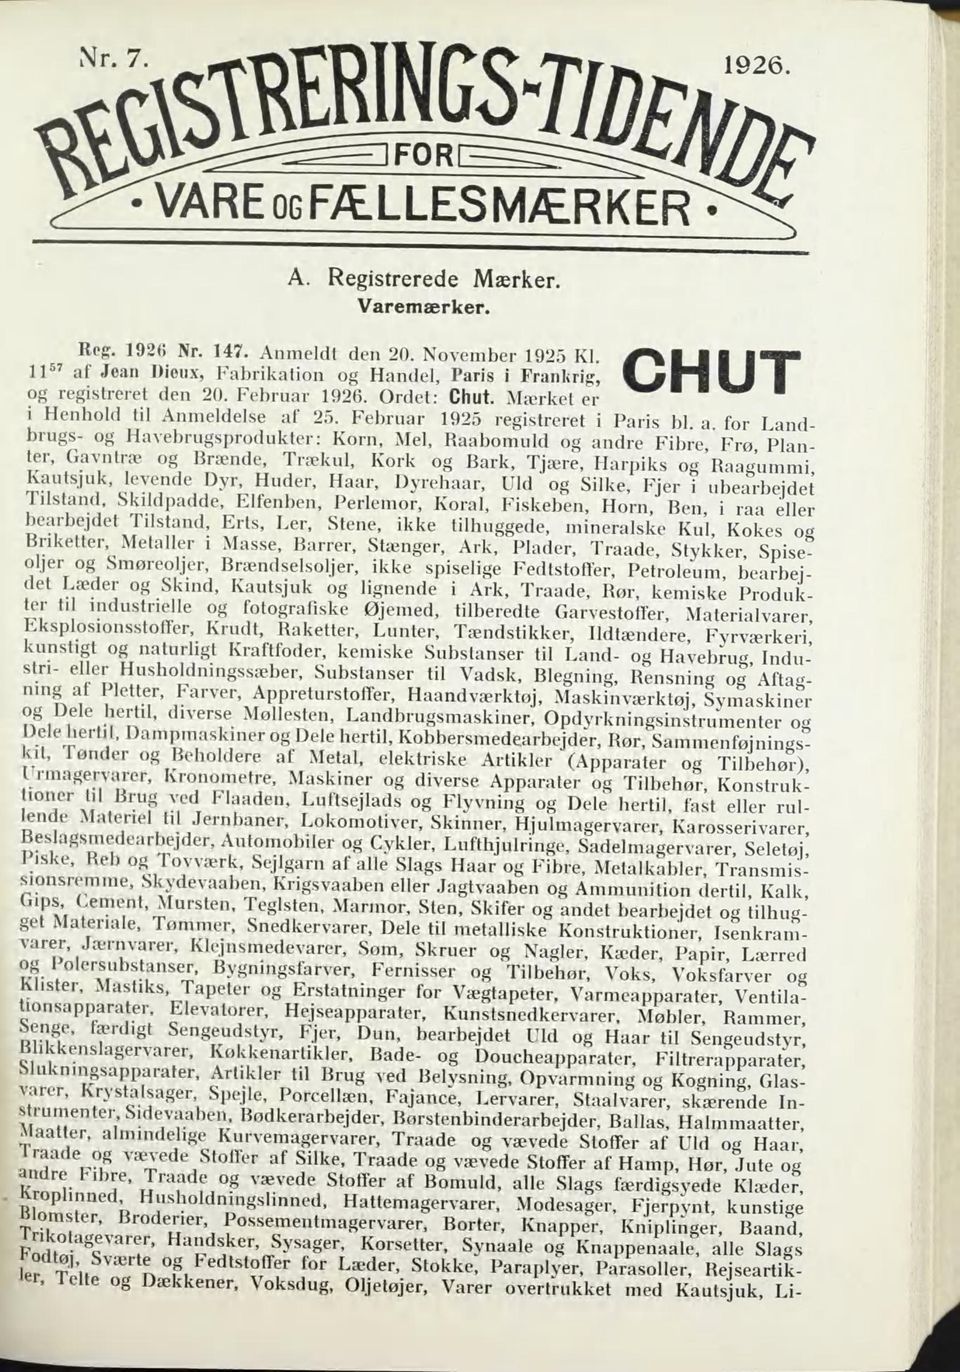 Februar 1925 registreret i Paris bl, a for Landbrugs- og Havebrugsprodukter: Korn, Mel, Raabomuld og andre Fibre Frø Plan ter.